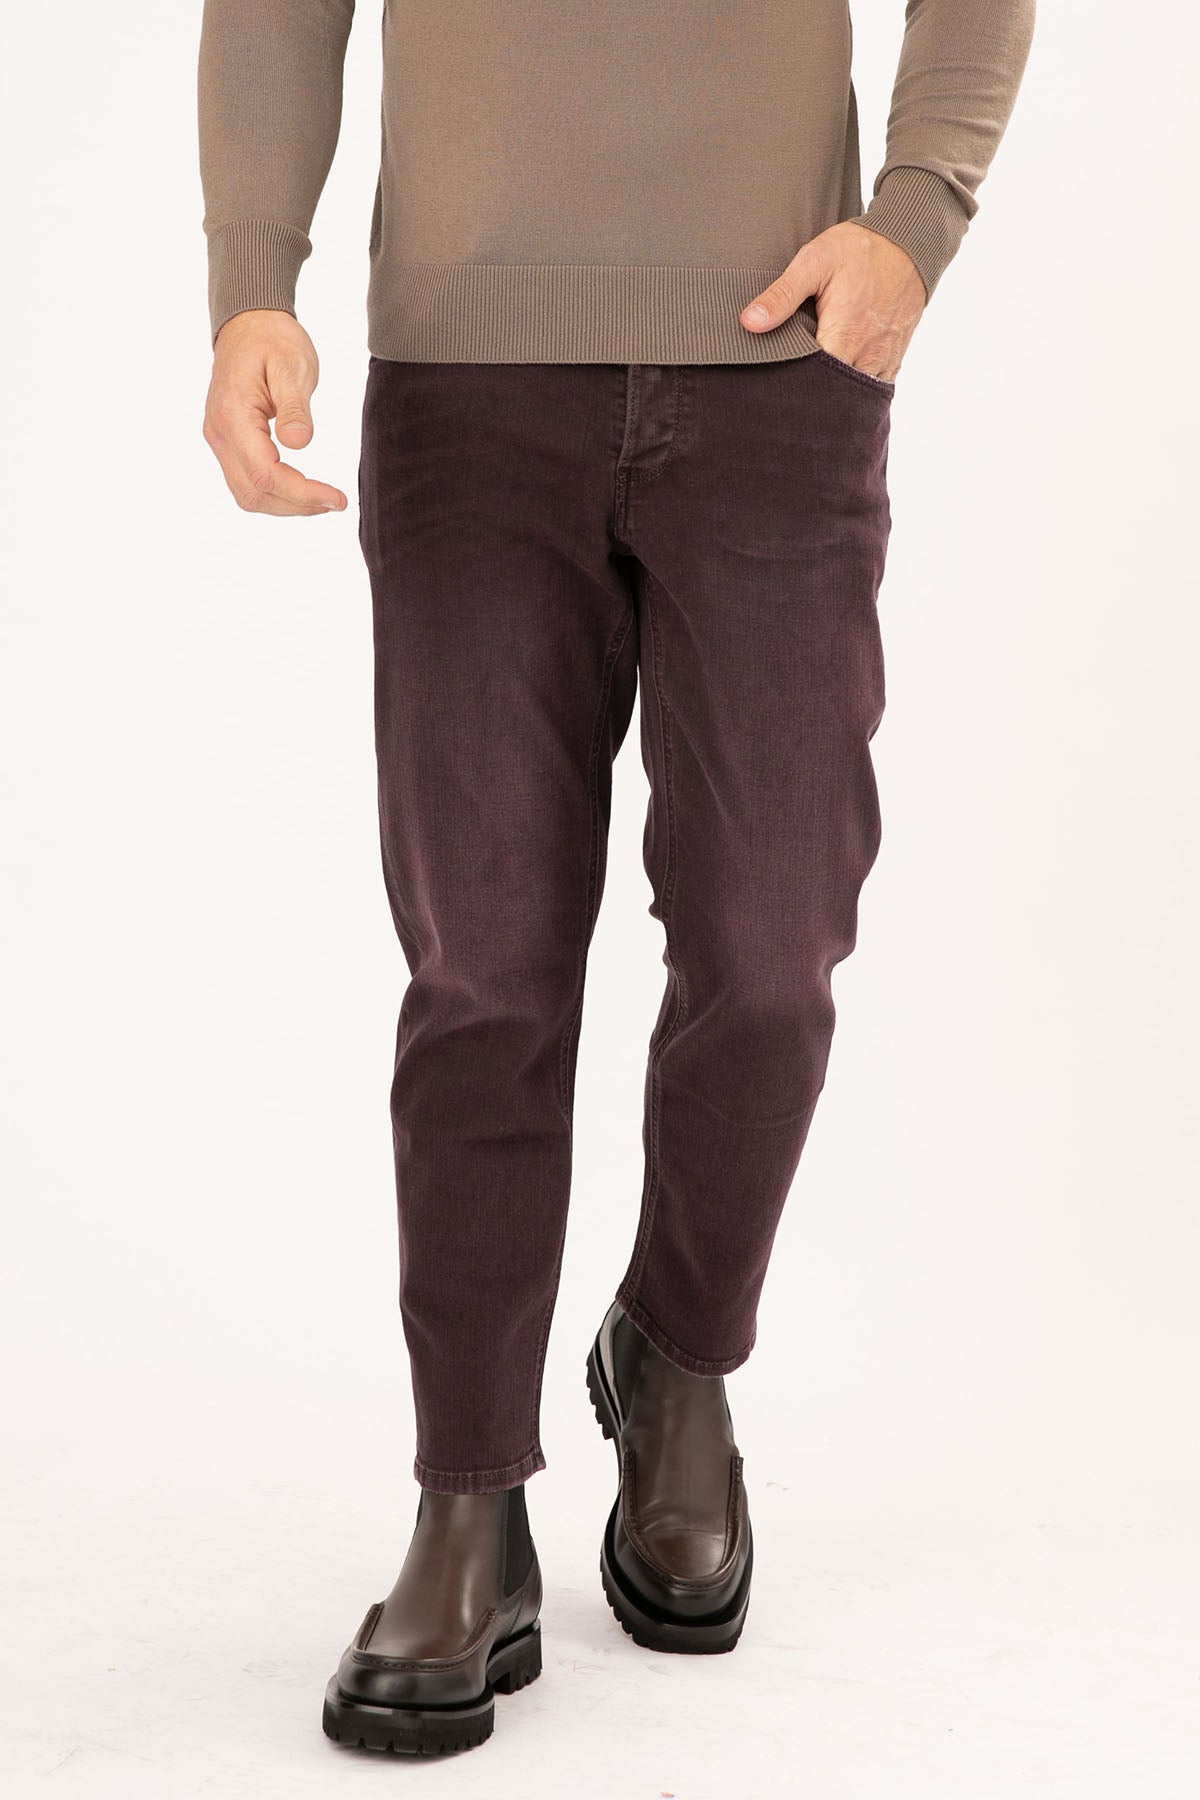 Pantaloni Torino Rebel Slim Fit Jeans-Libas Trendy Fashion Store